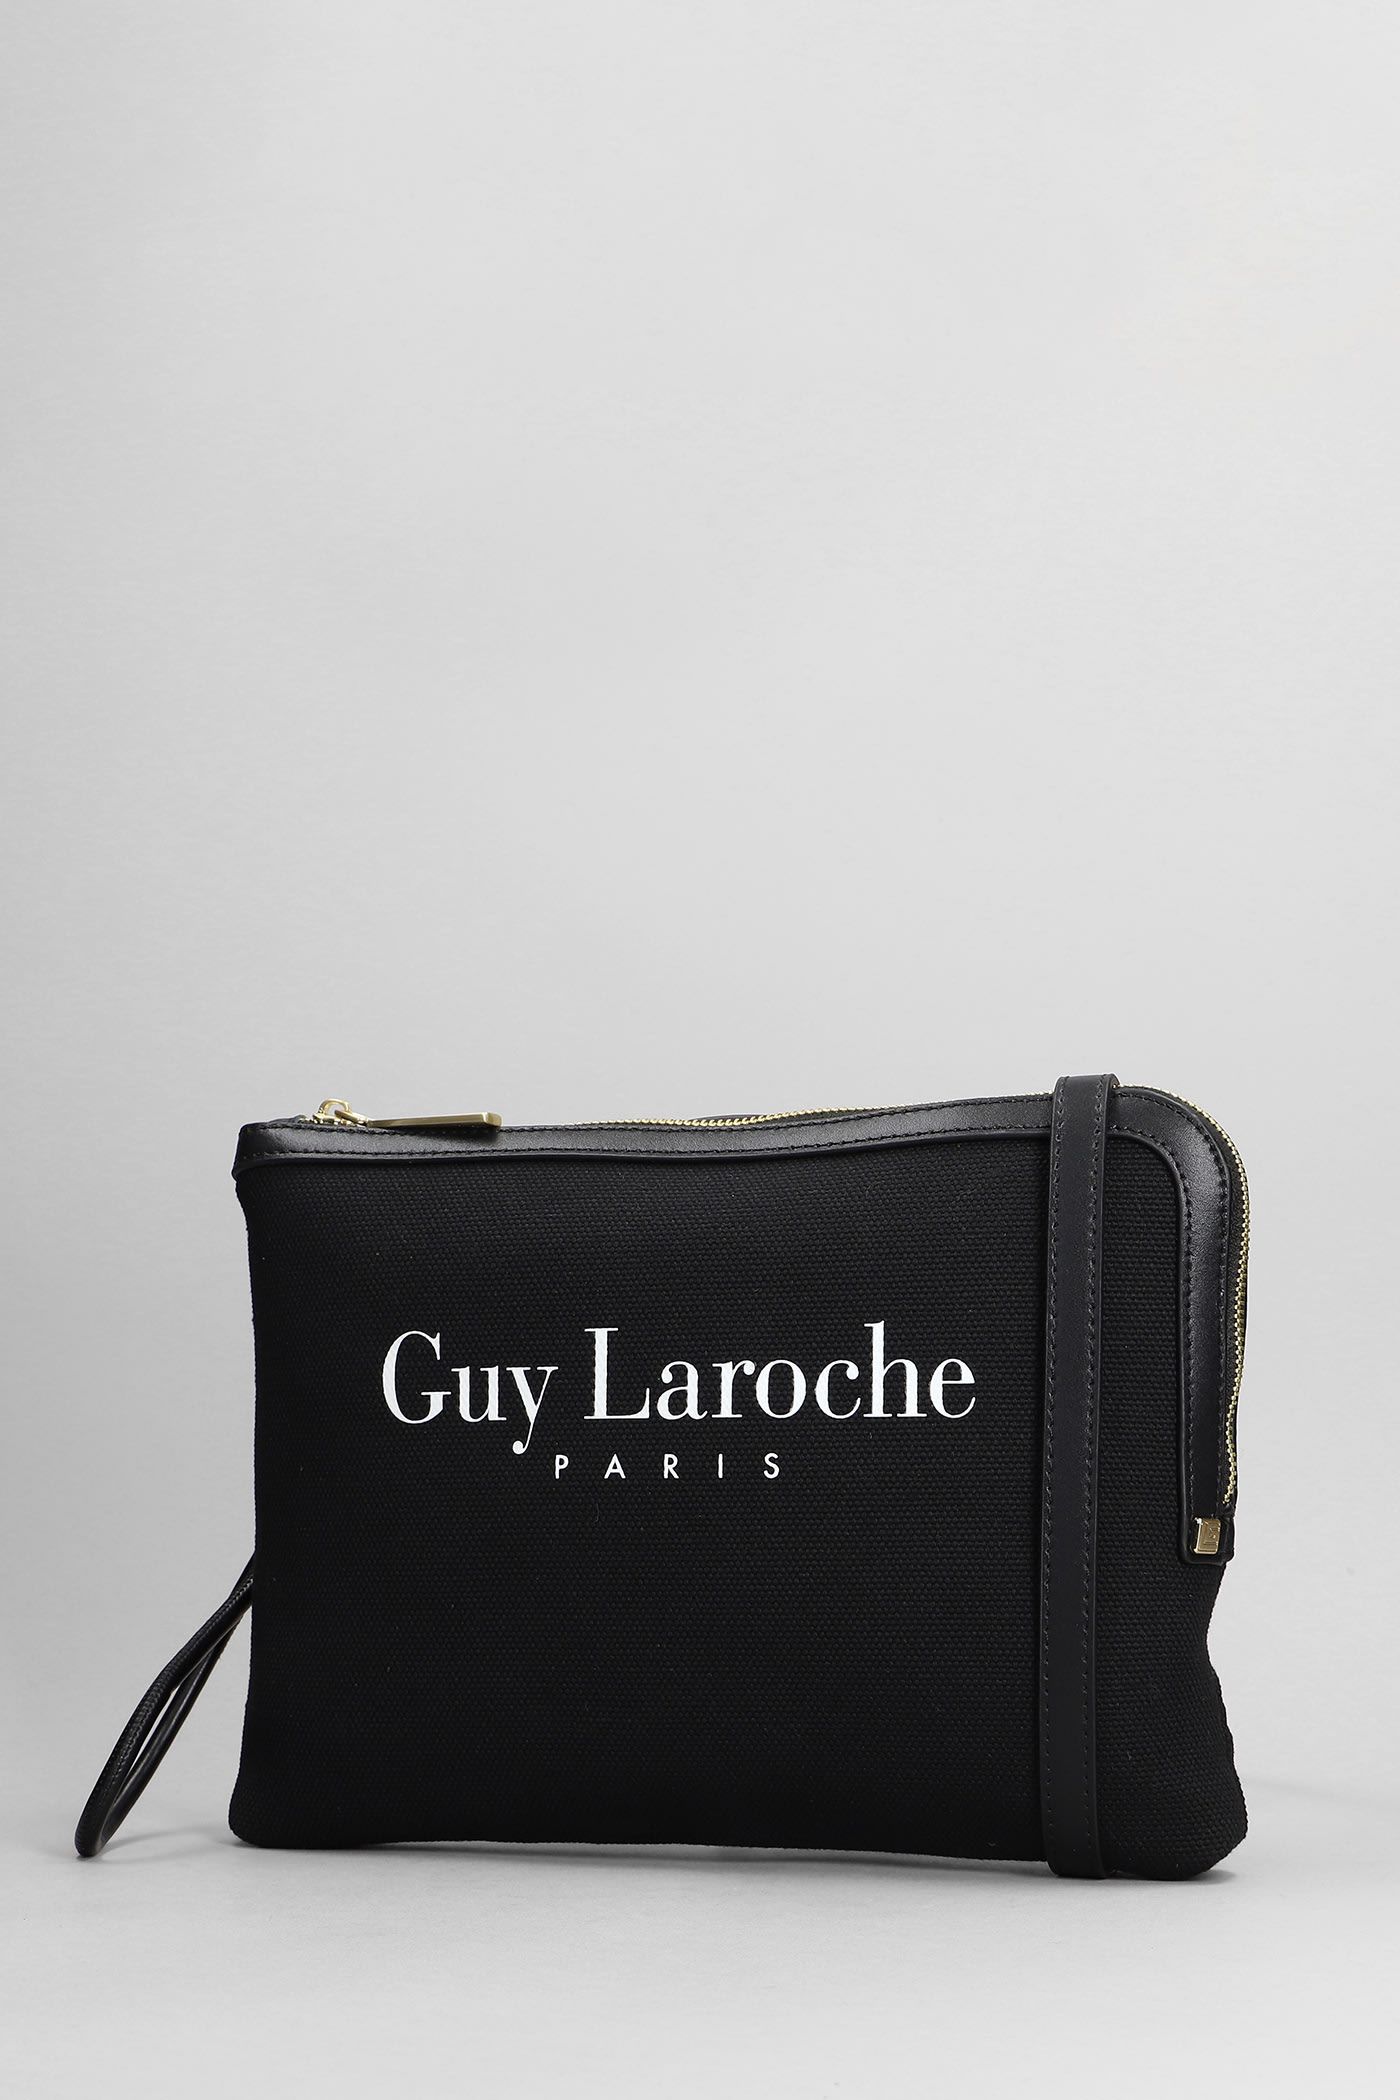 Guy Laroche Clutch In Black Canvas